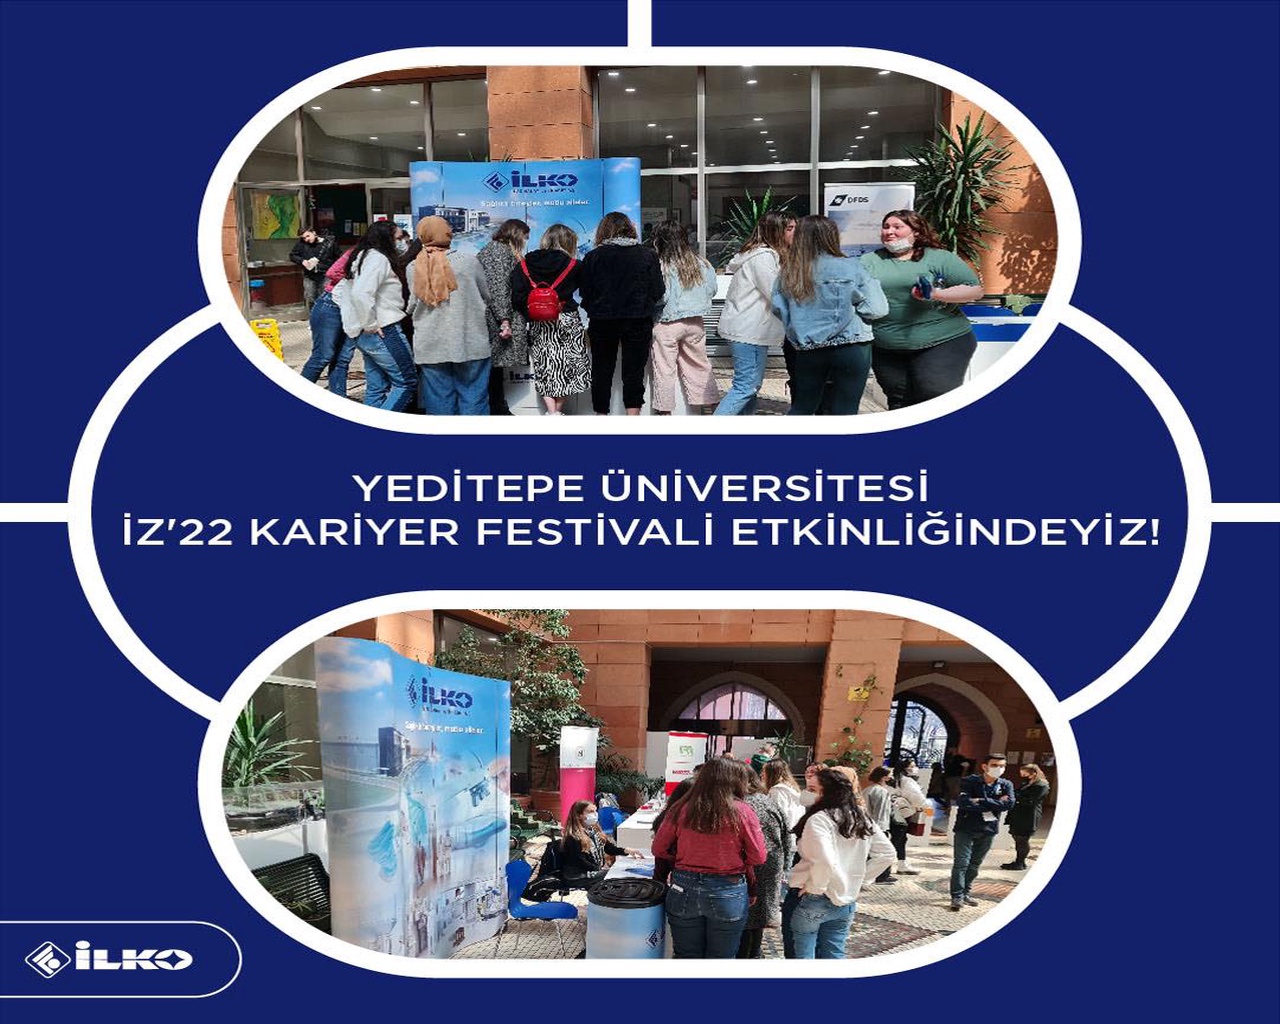 İLKO İlaç Olarak Yeditepe Üniversitesi’nin İZ’22 Kariyer Festivali Etkinliğine Katıldık